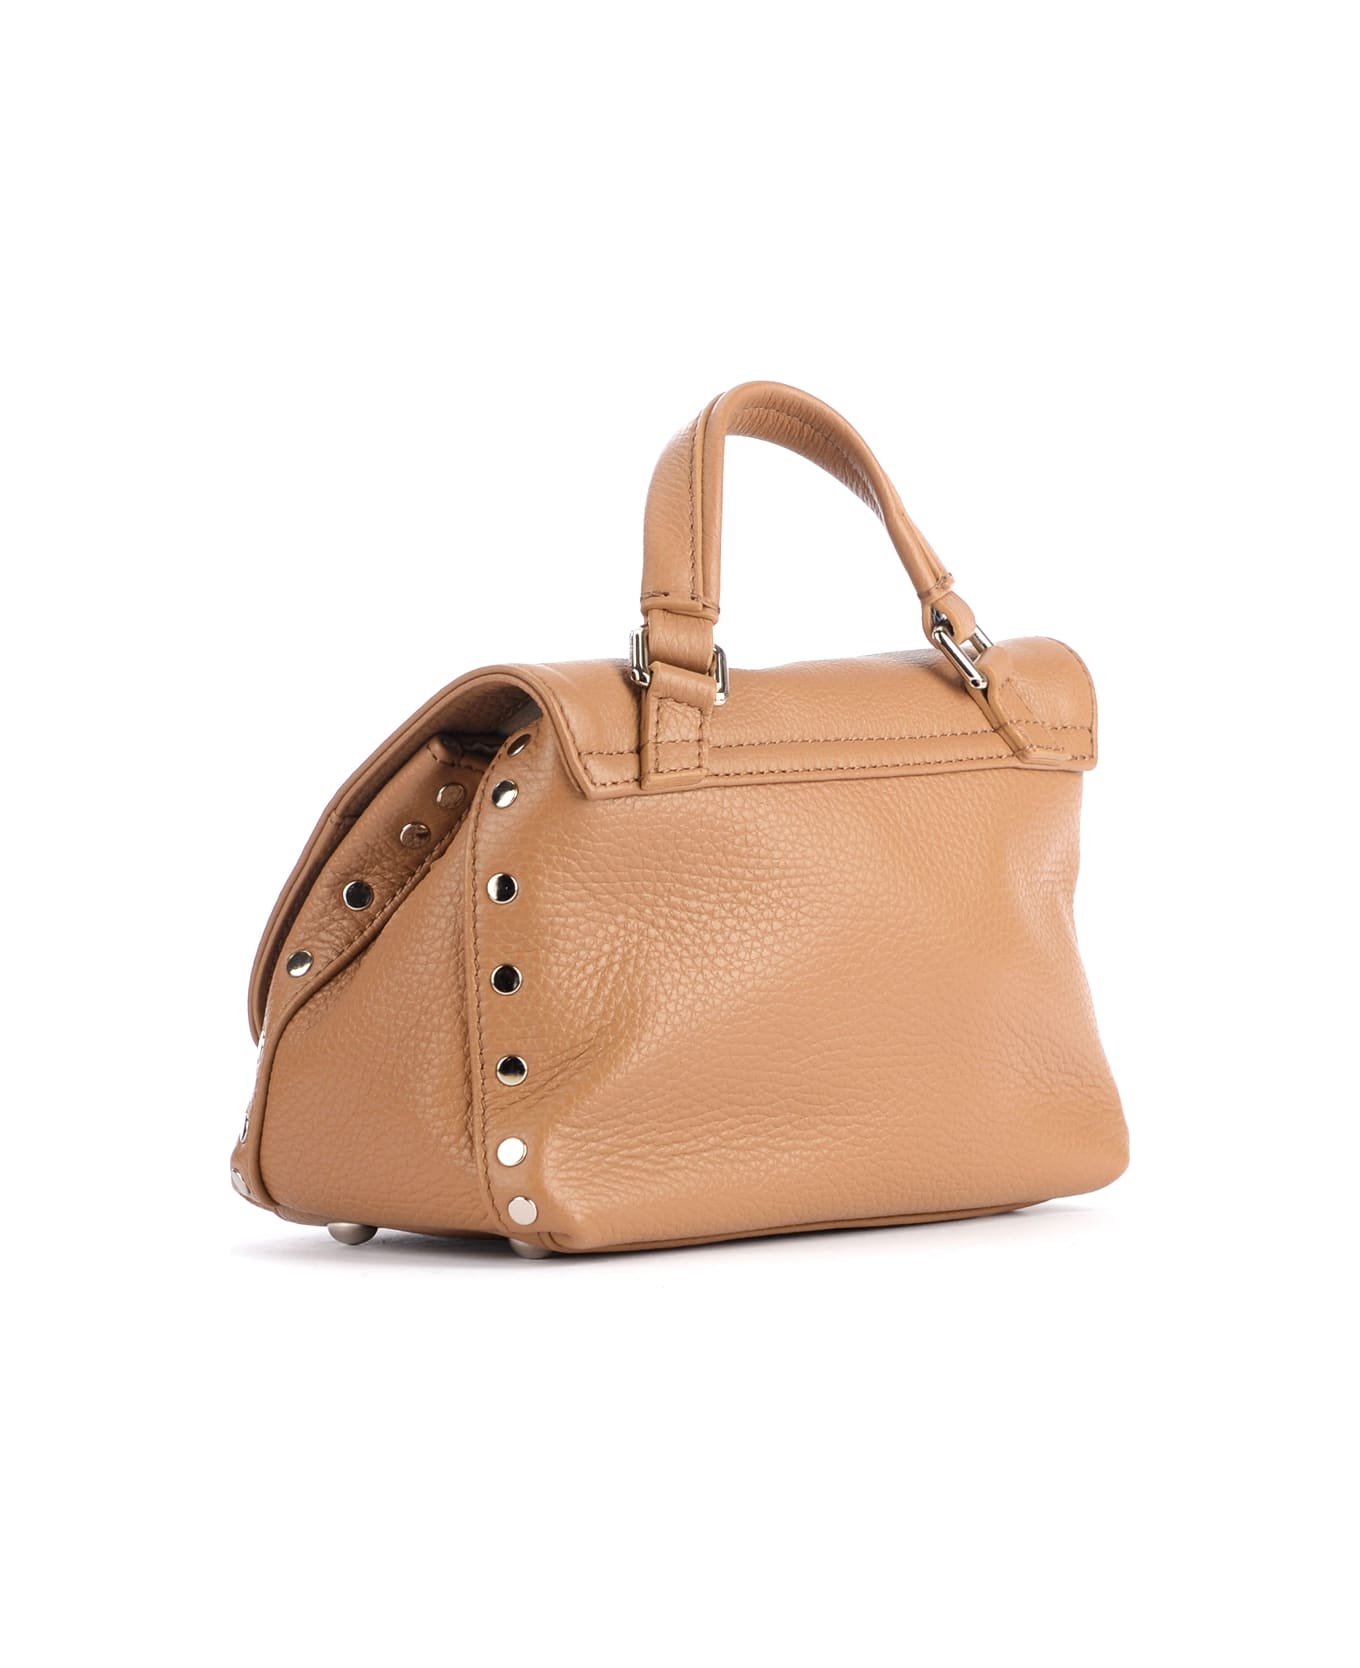 Zanellato Postina Daily Baby Bag In Cappuccino-colored Grained Leather - Cappuccino トートバッグ